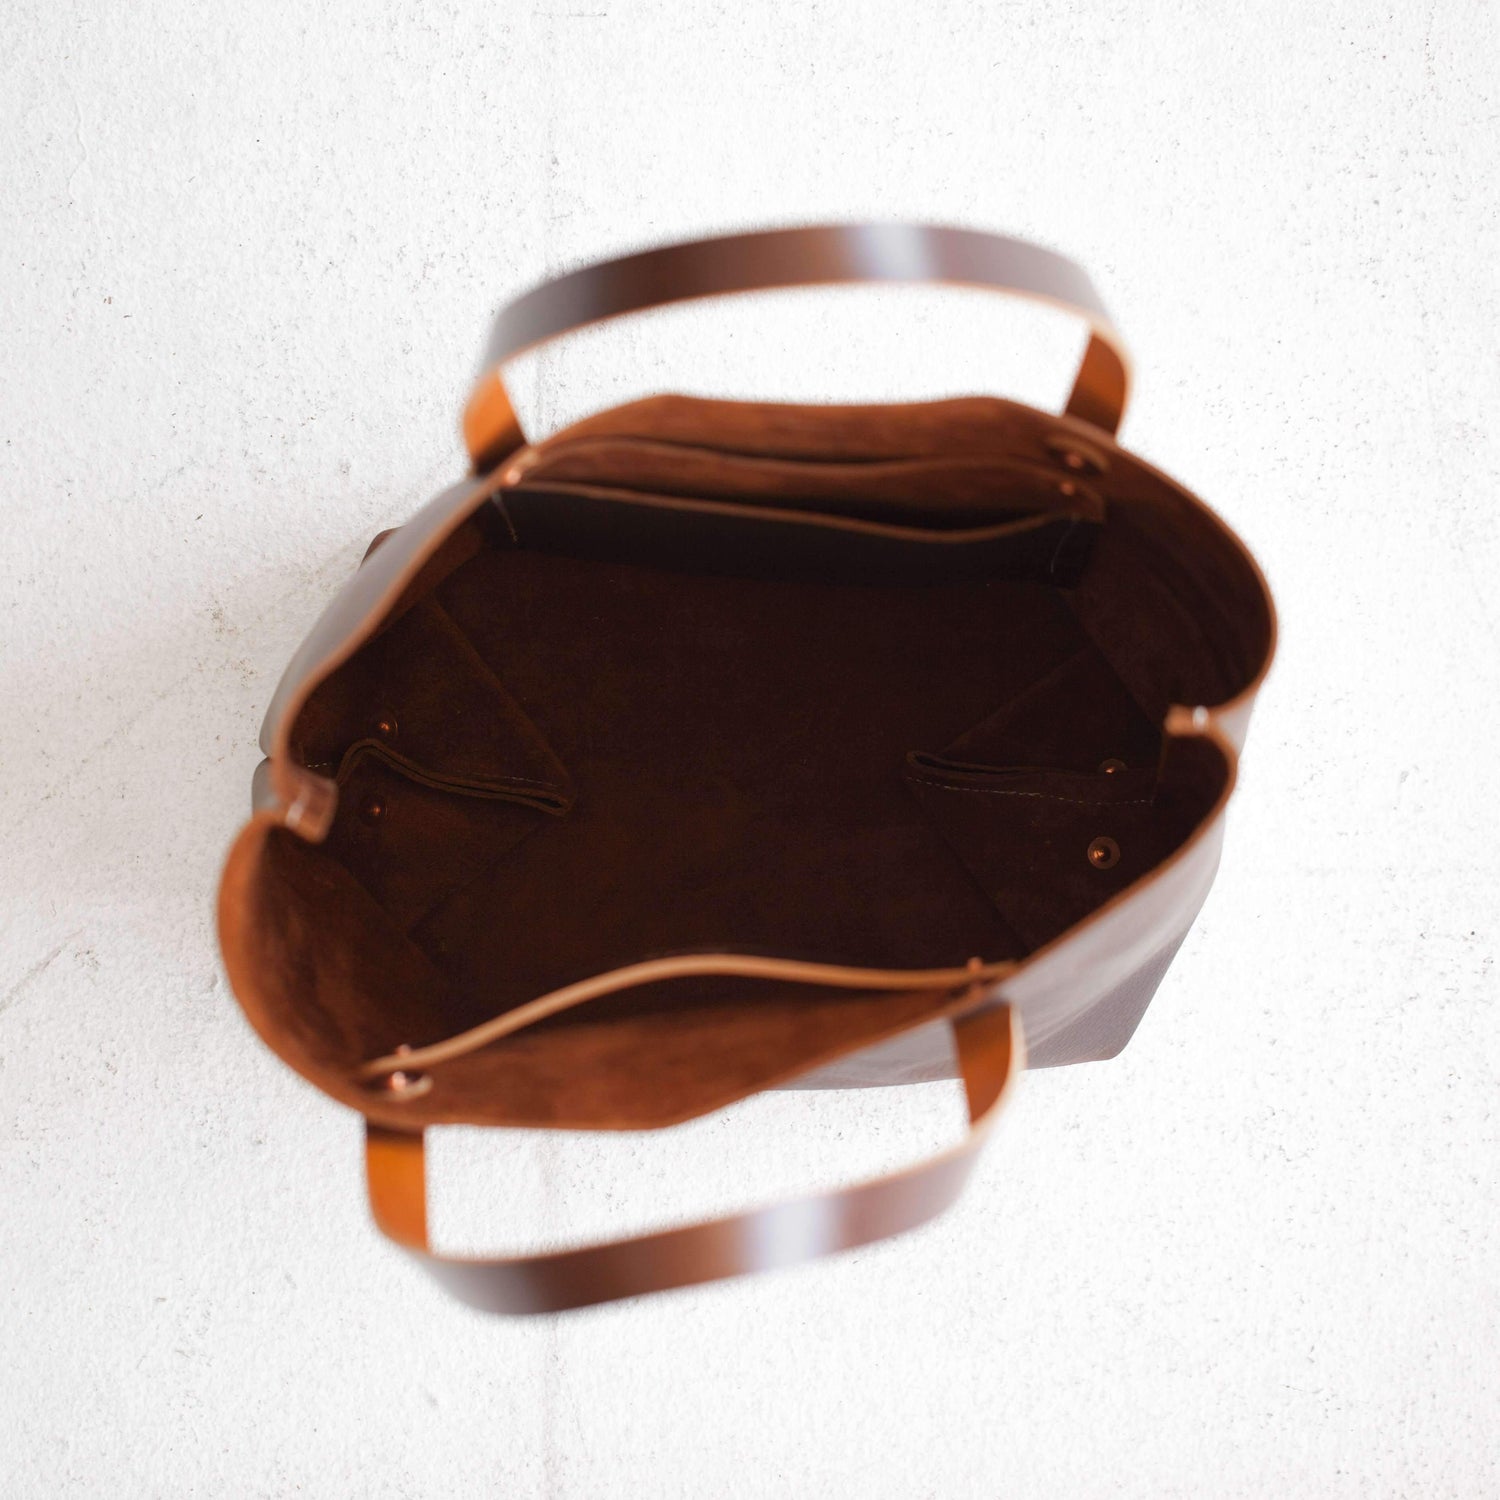 Brown Kodiak Tote- brown tote bag handmade in America